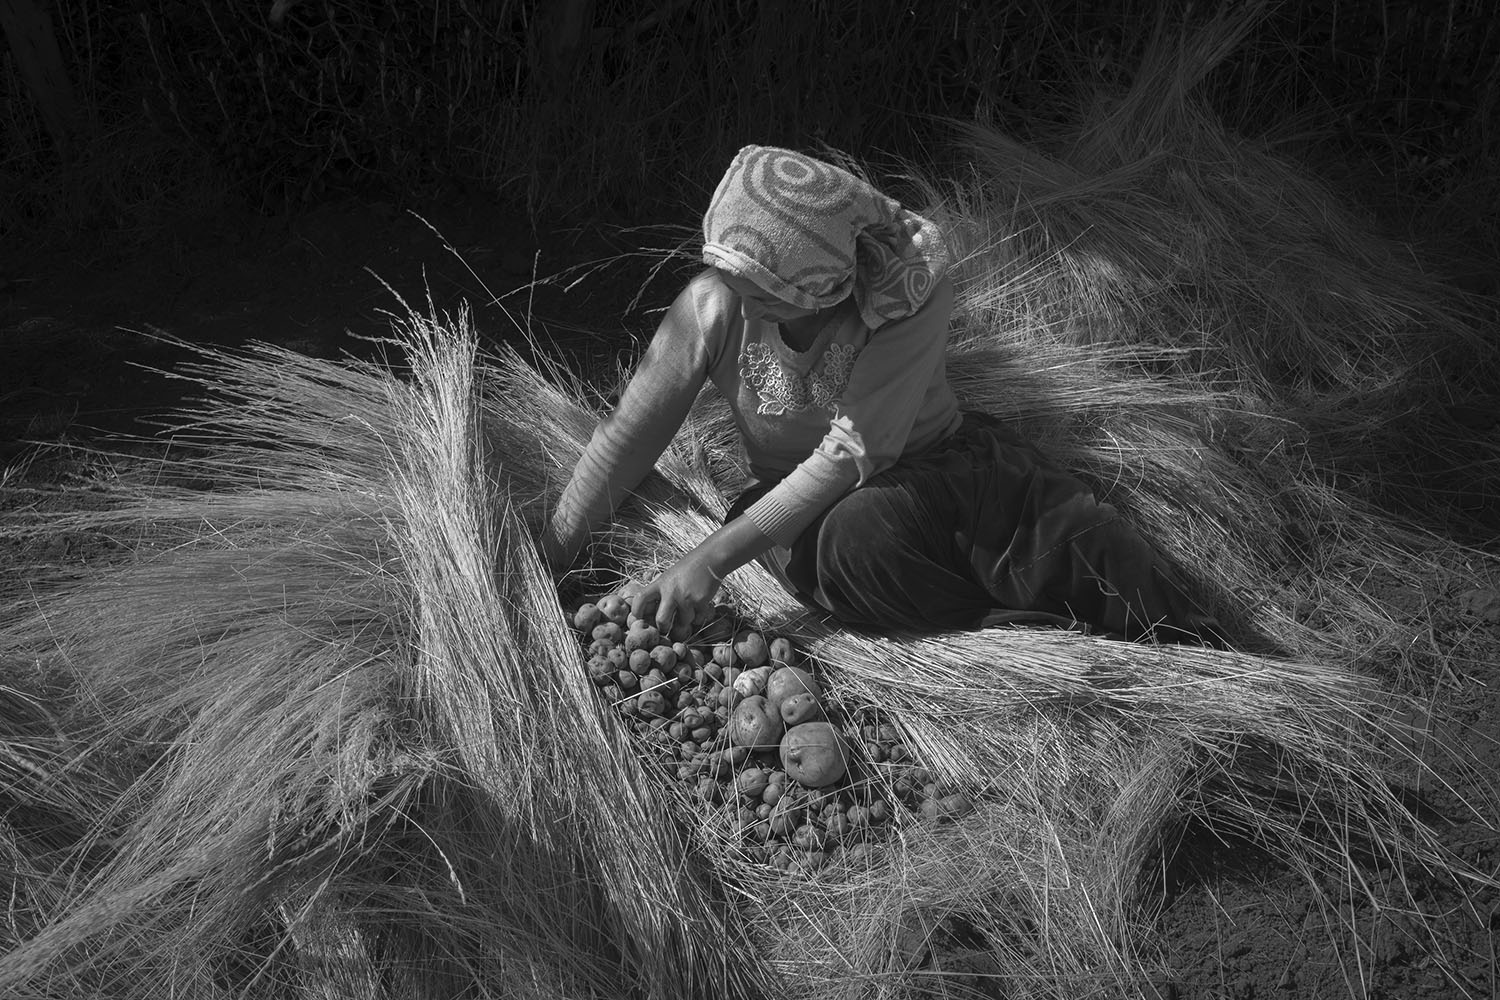 Alessandro Cinque: Perù, a toxic state. Il raccolto di patate mostrato da una donna.